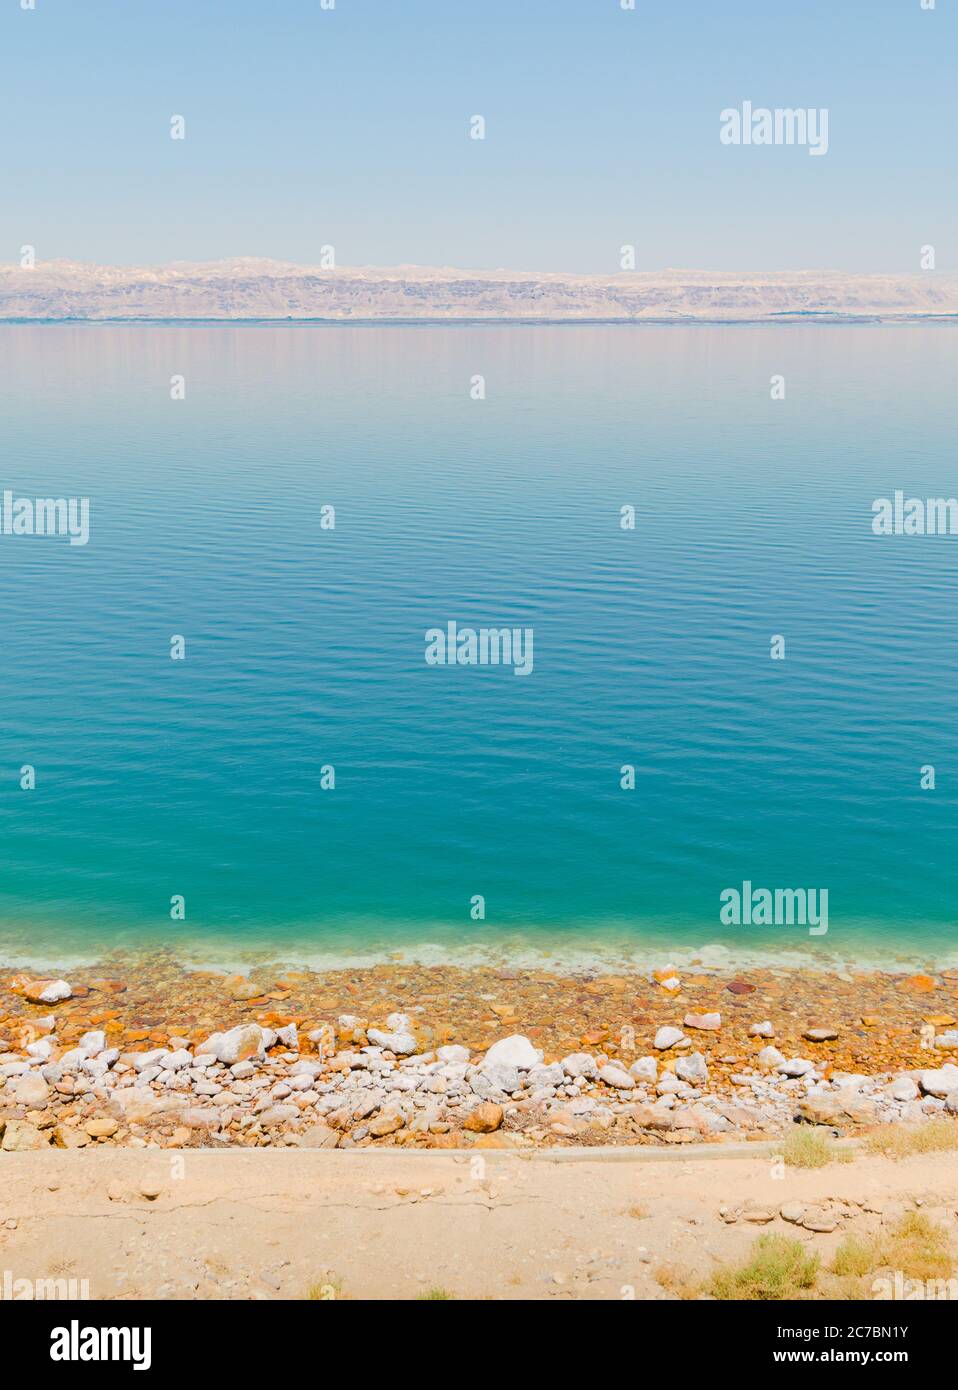 Vista panoramica verticale della riva del Mar Morto, con crosta di sale e spiaggia di ghiaia vicino a un resort turistico, e la linea di montagna dei territori d'Israele sulla riva Foto Stock